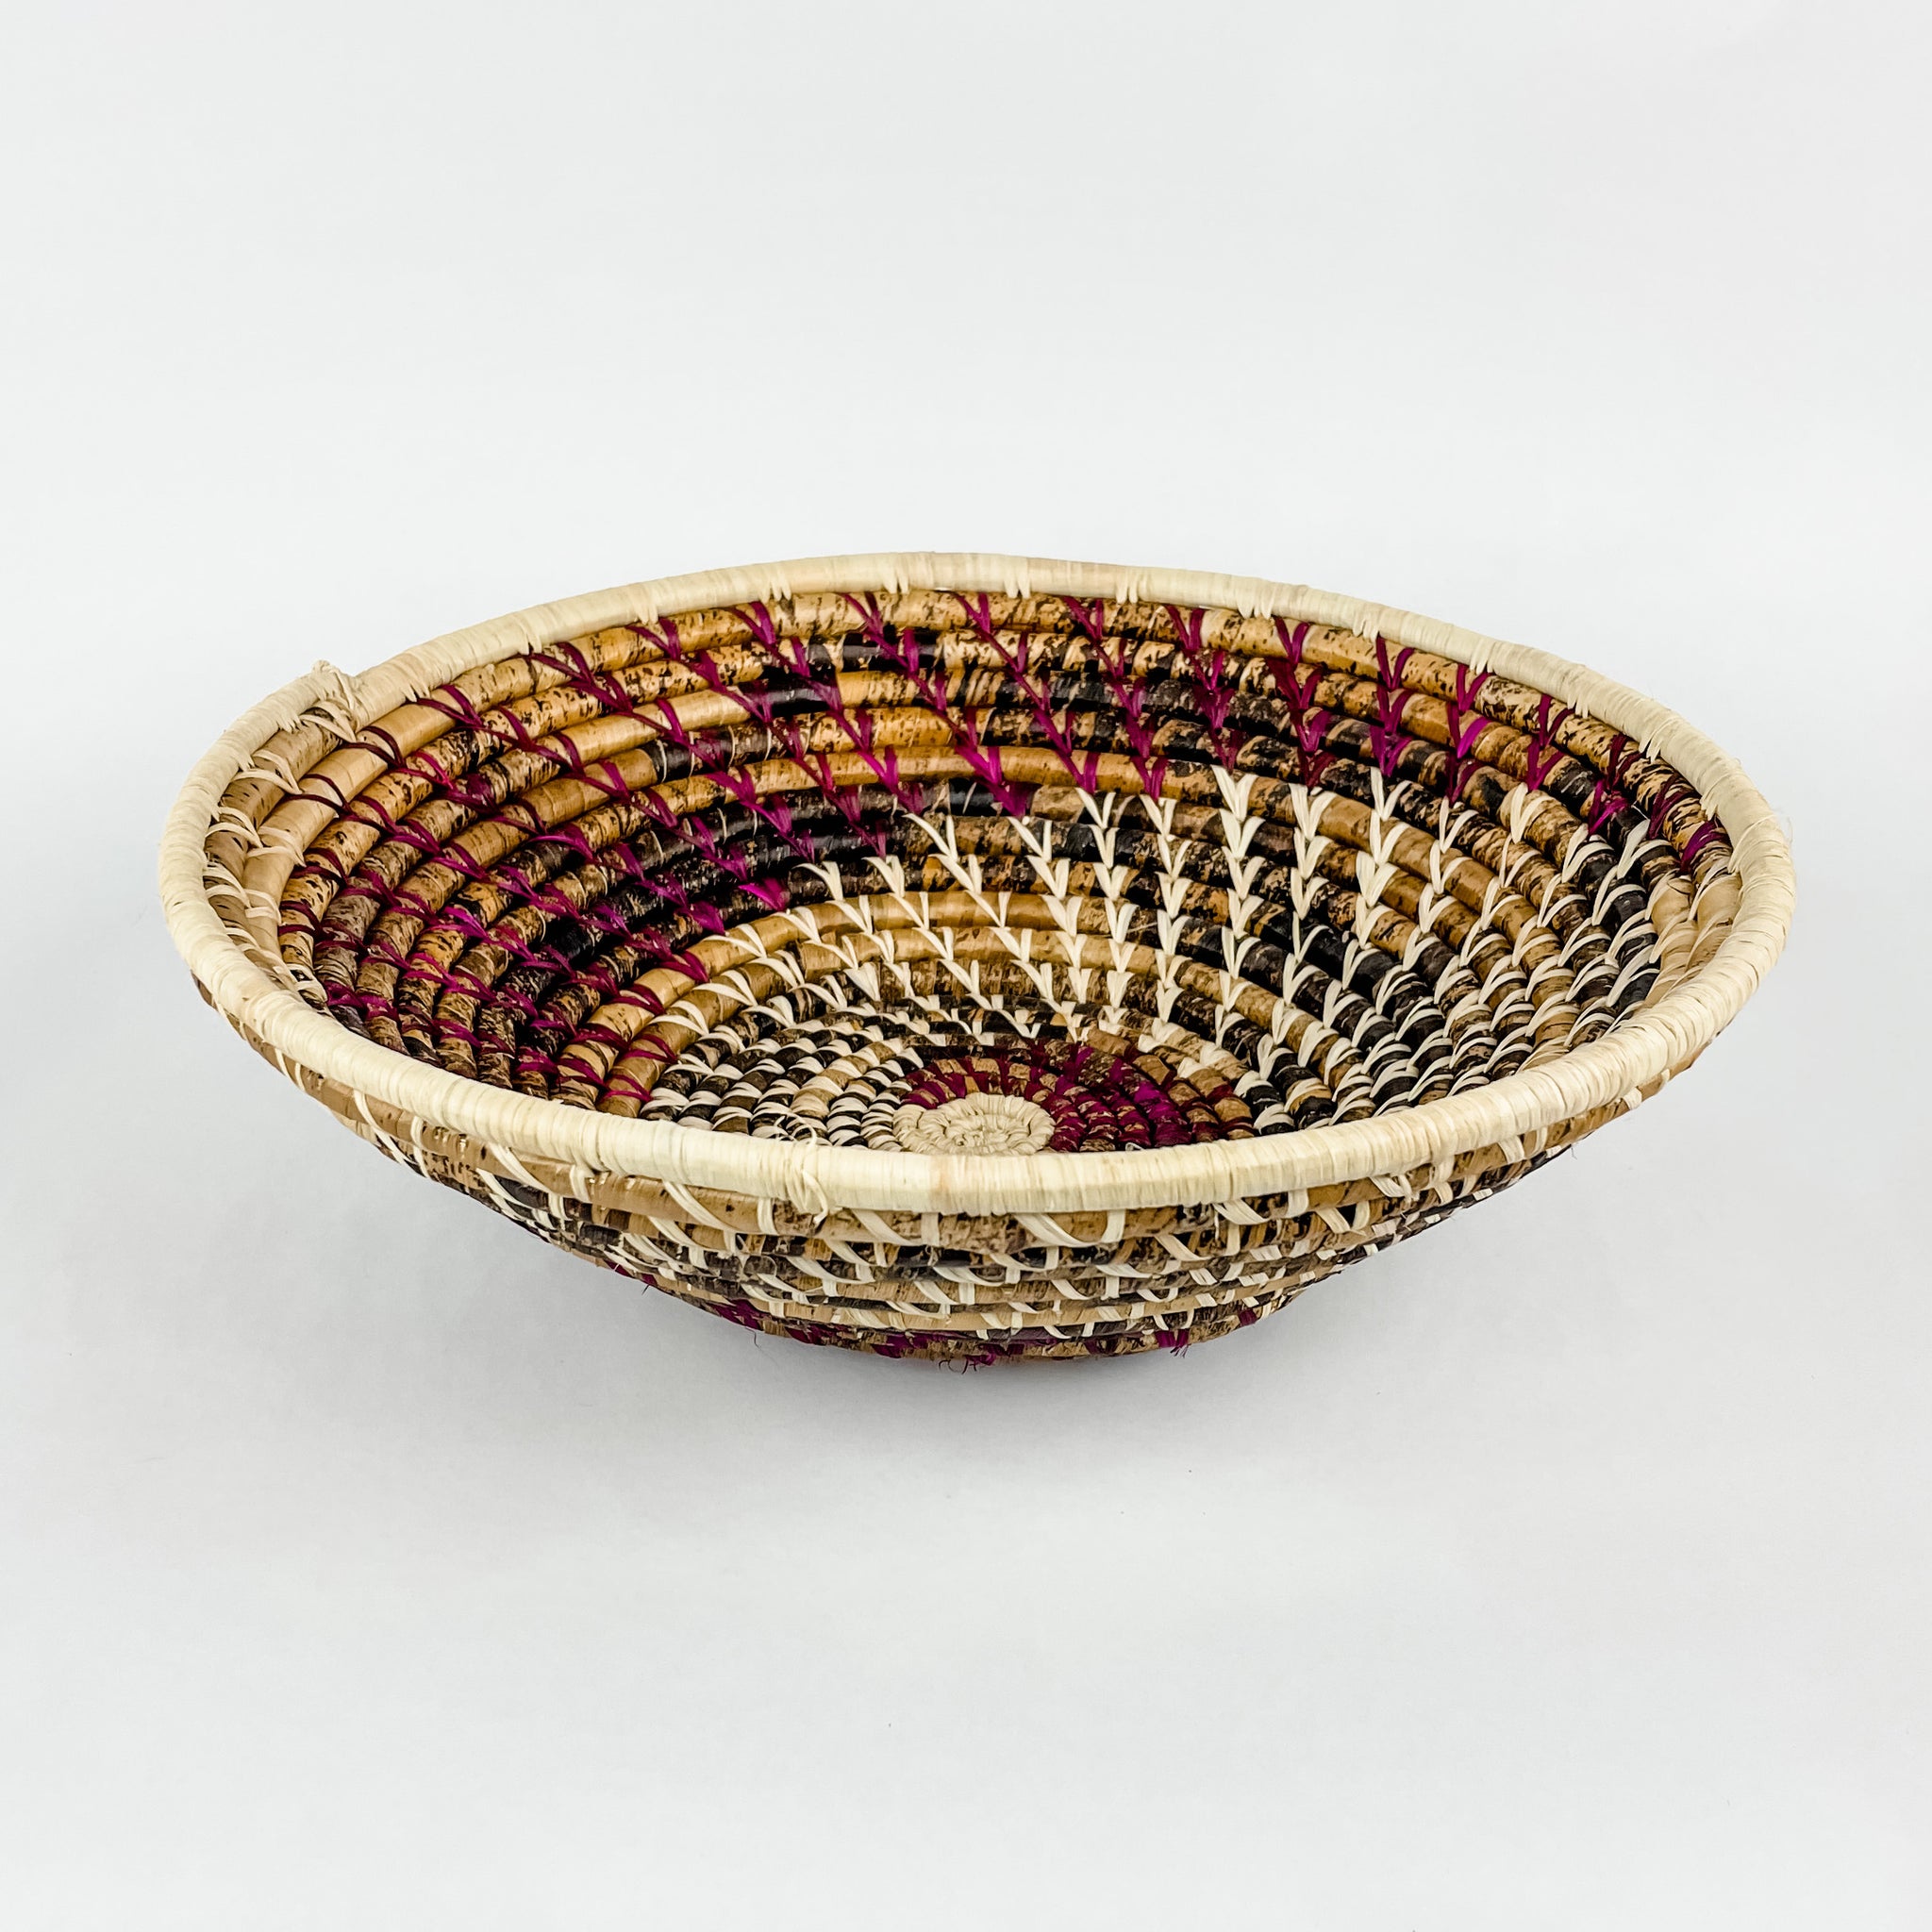 Grass-Woven Basket, Plum/Natural Spiral